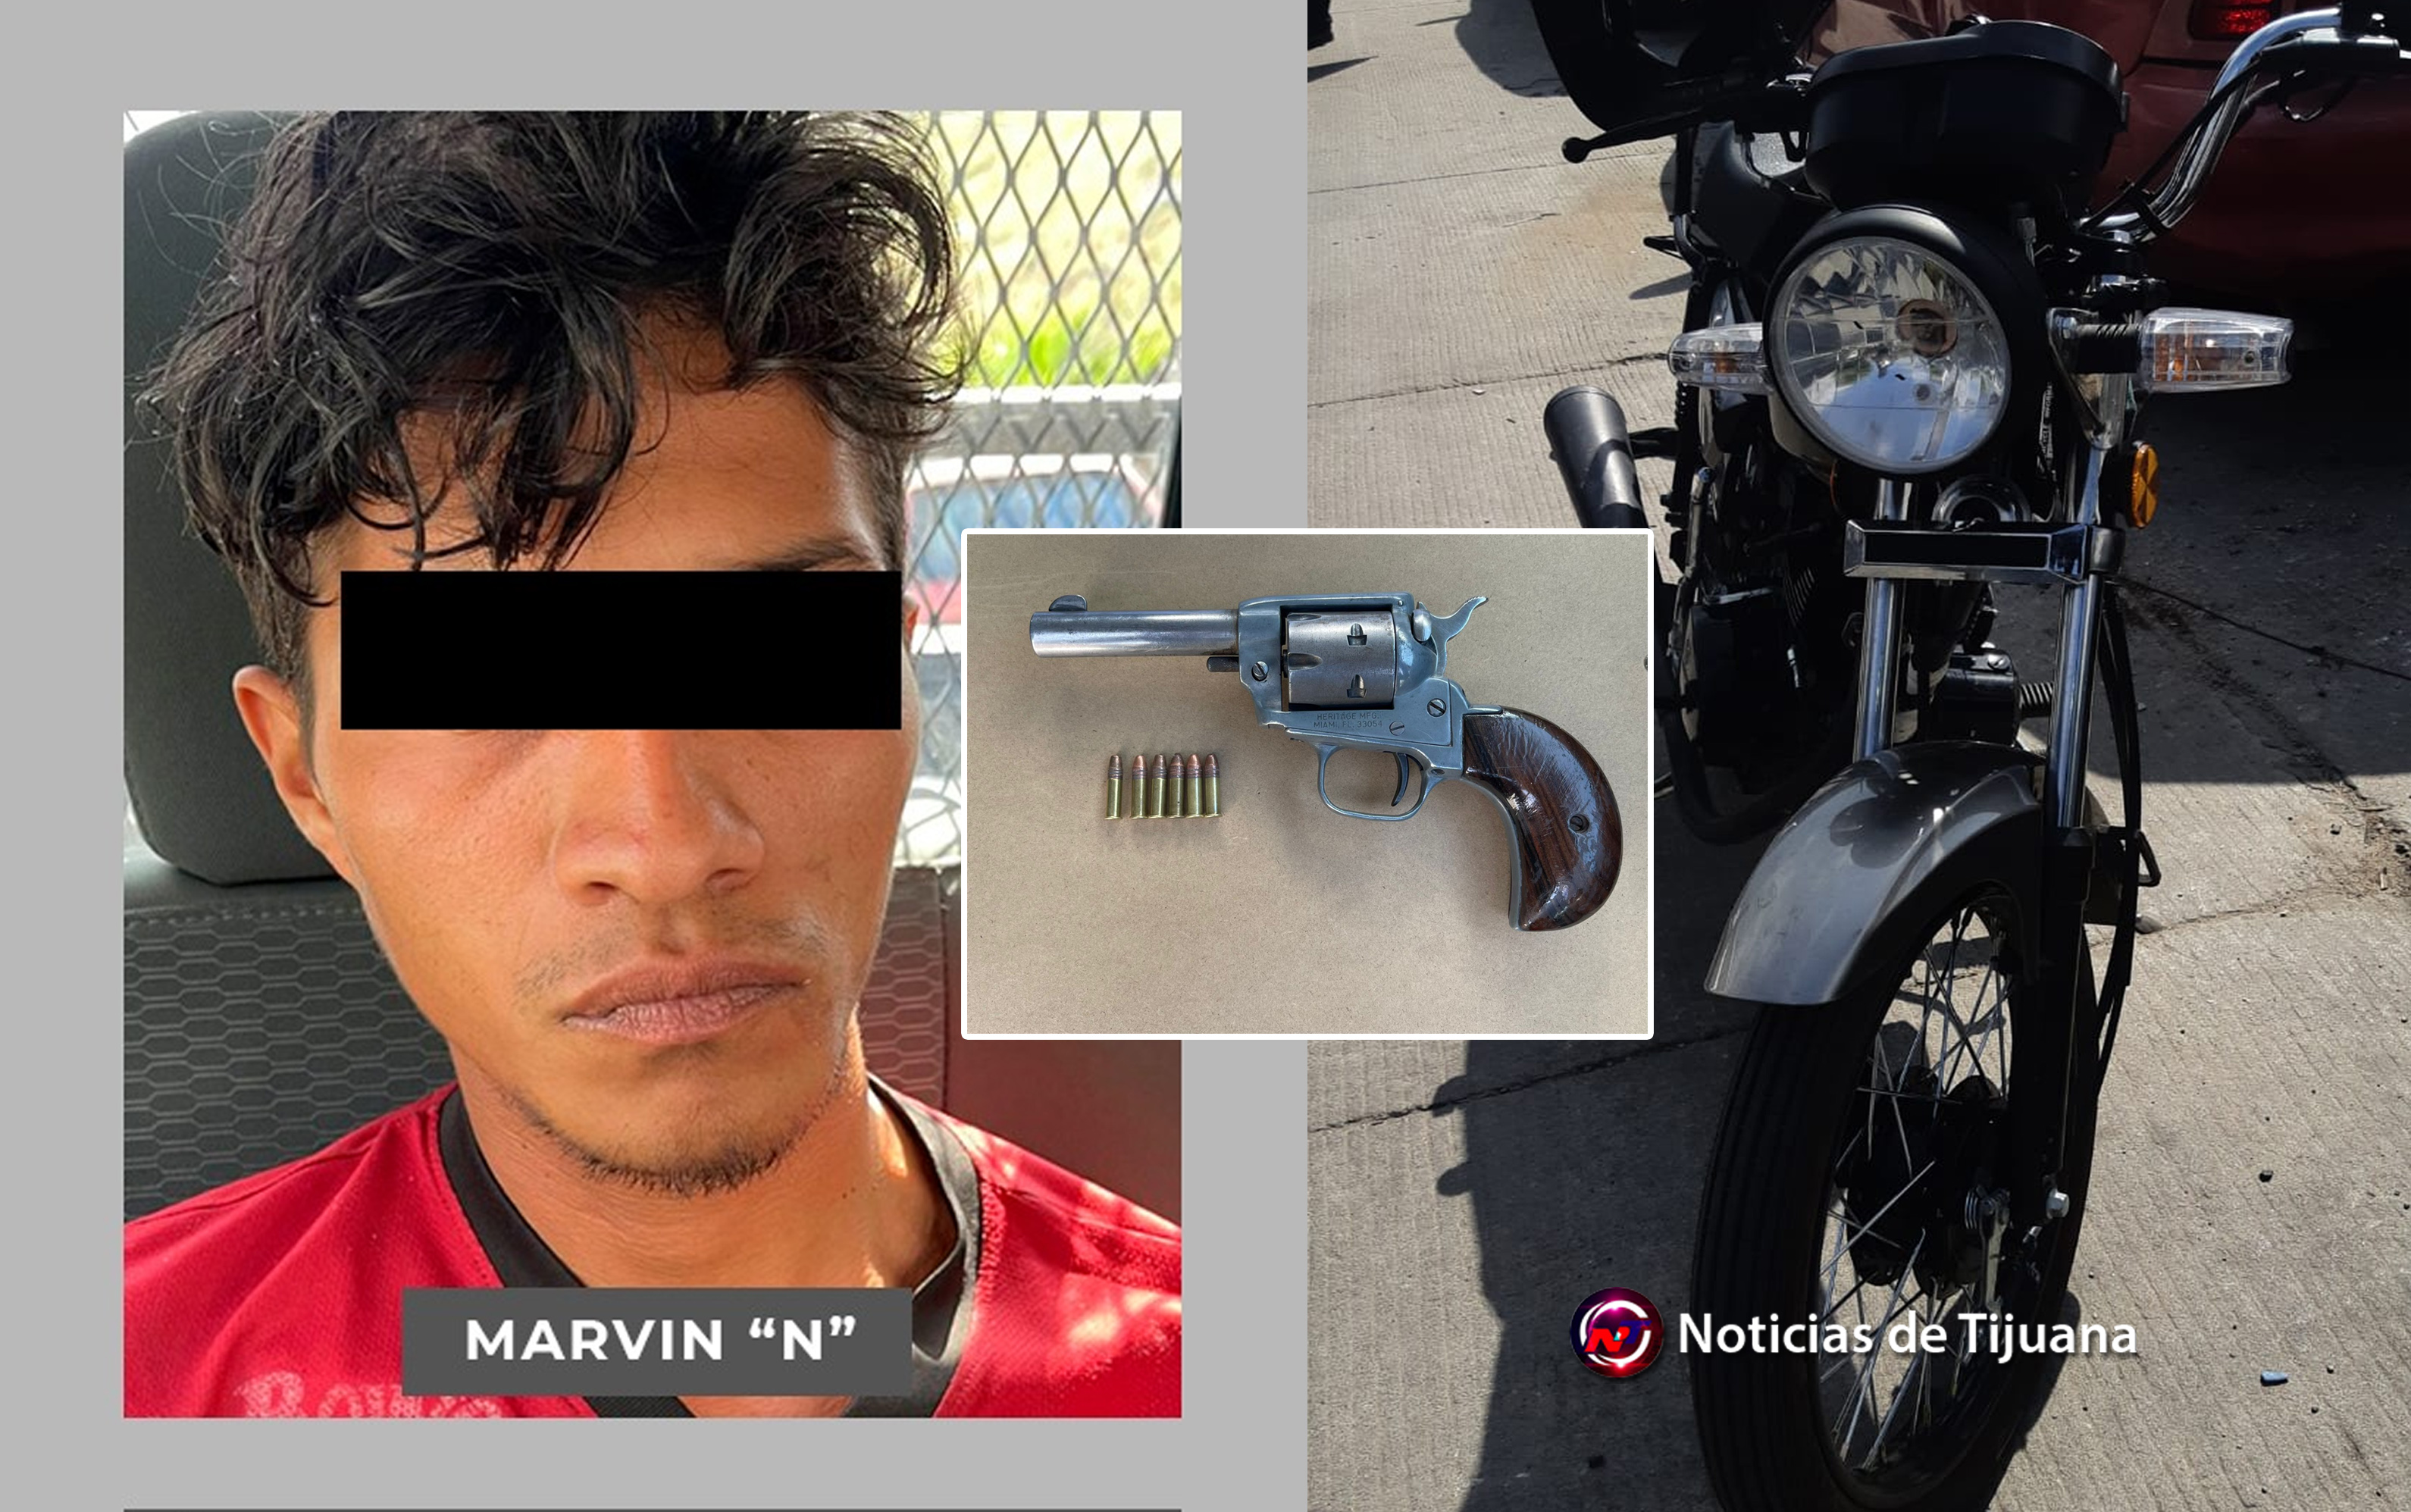 Capturan a El Marvin se paseaba en motocicleta robada y armado |